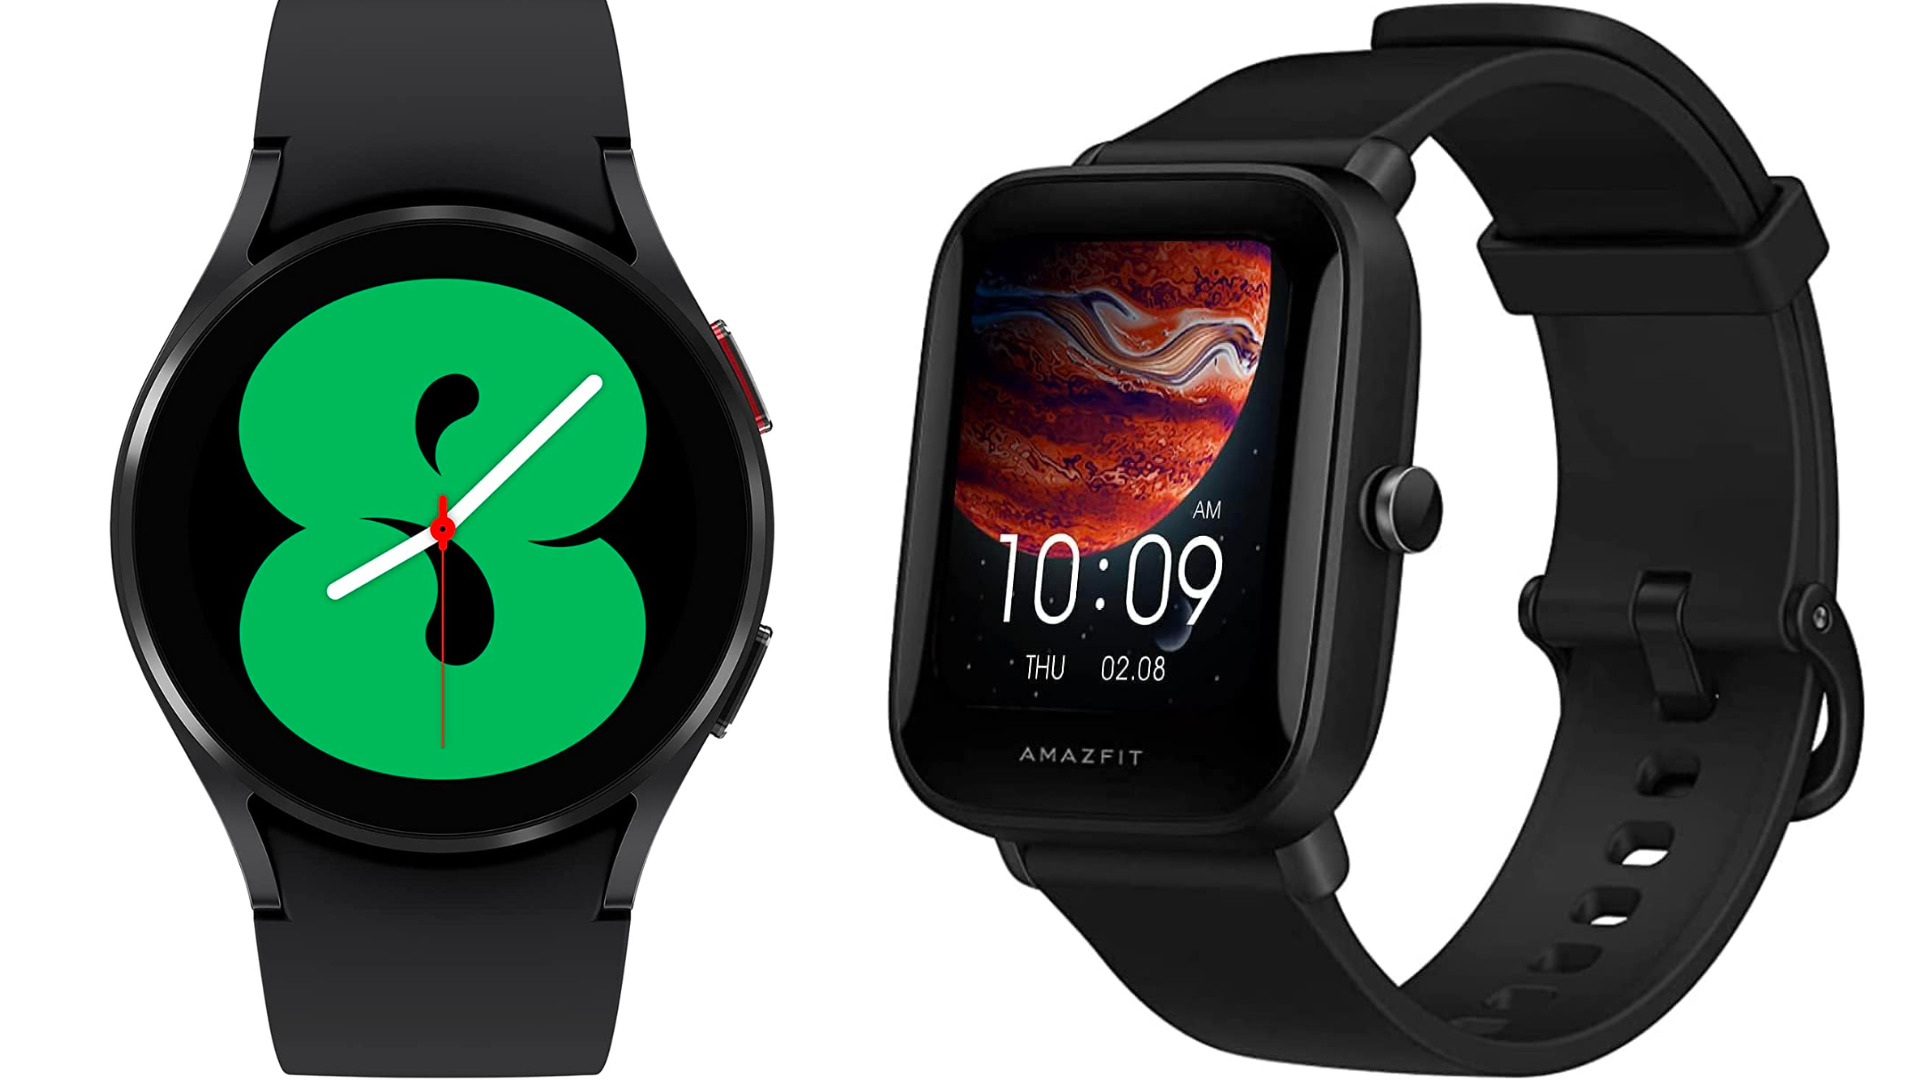 Melhor smartwatch até R$ 1000